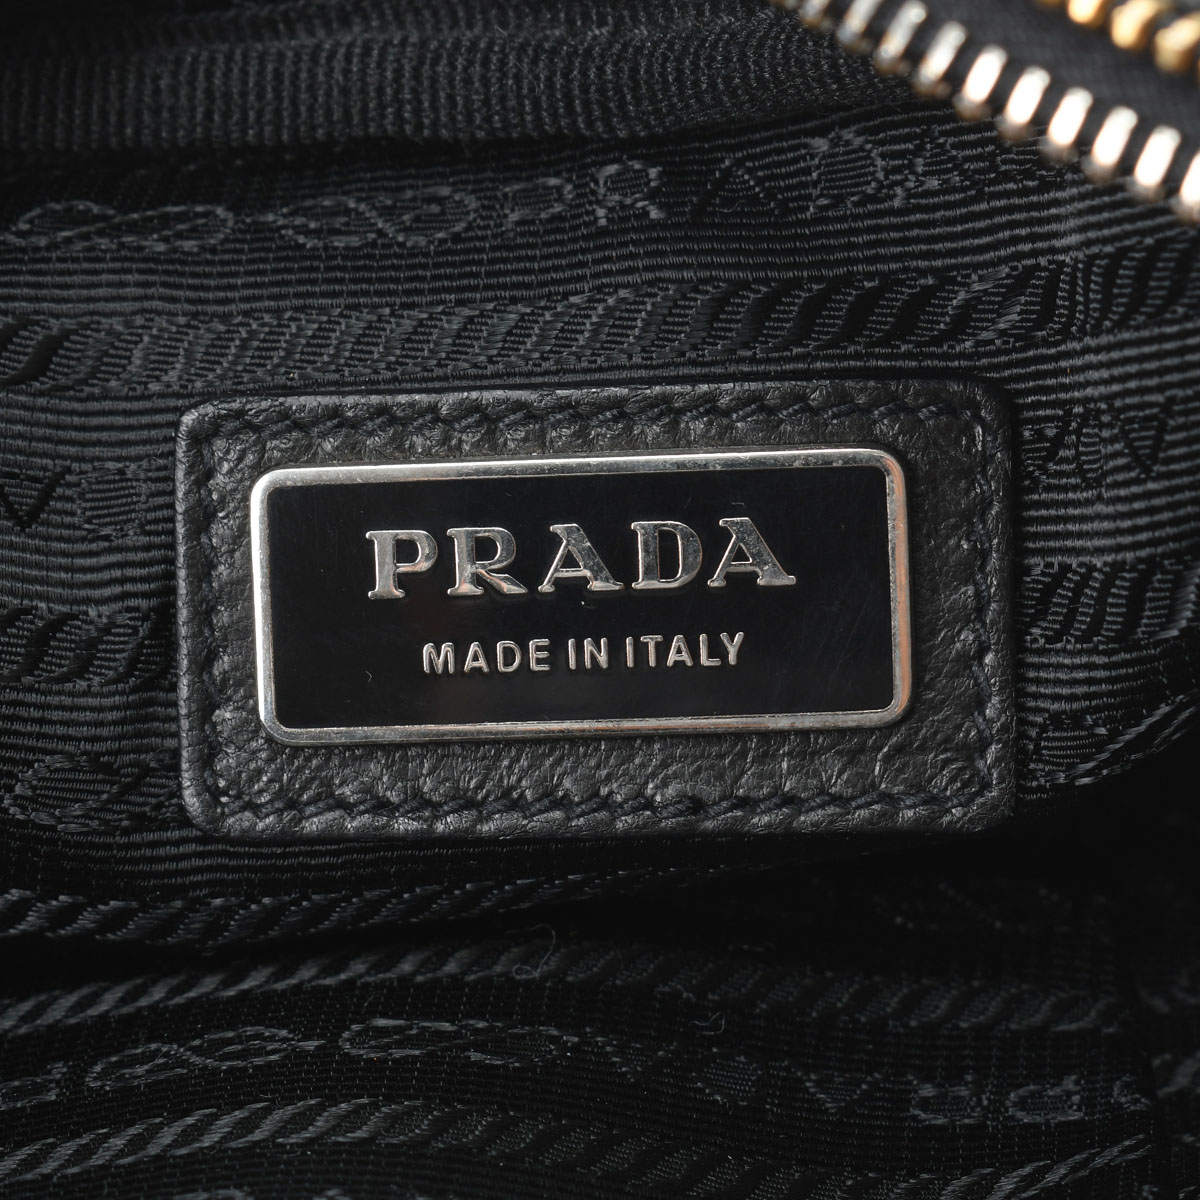 プラダ PRADA BP0166 レディース ショルダーバッグ ブラック/ピンク /ゴールド金具 レザー